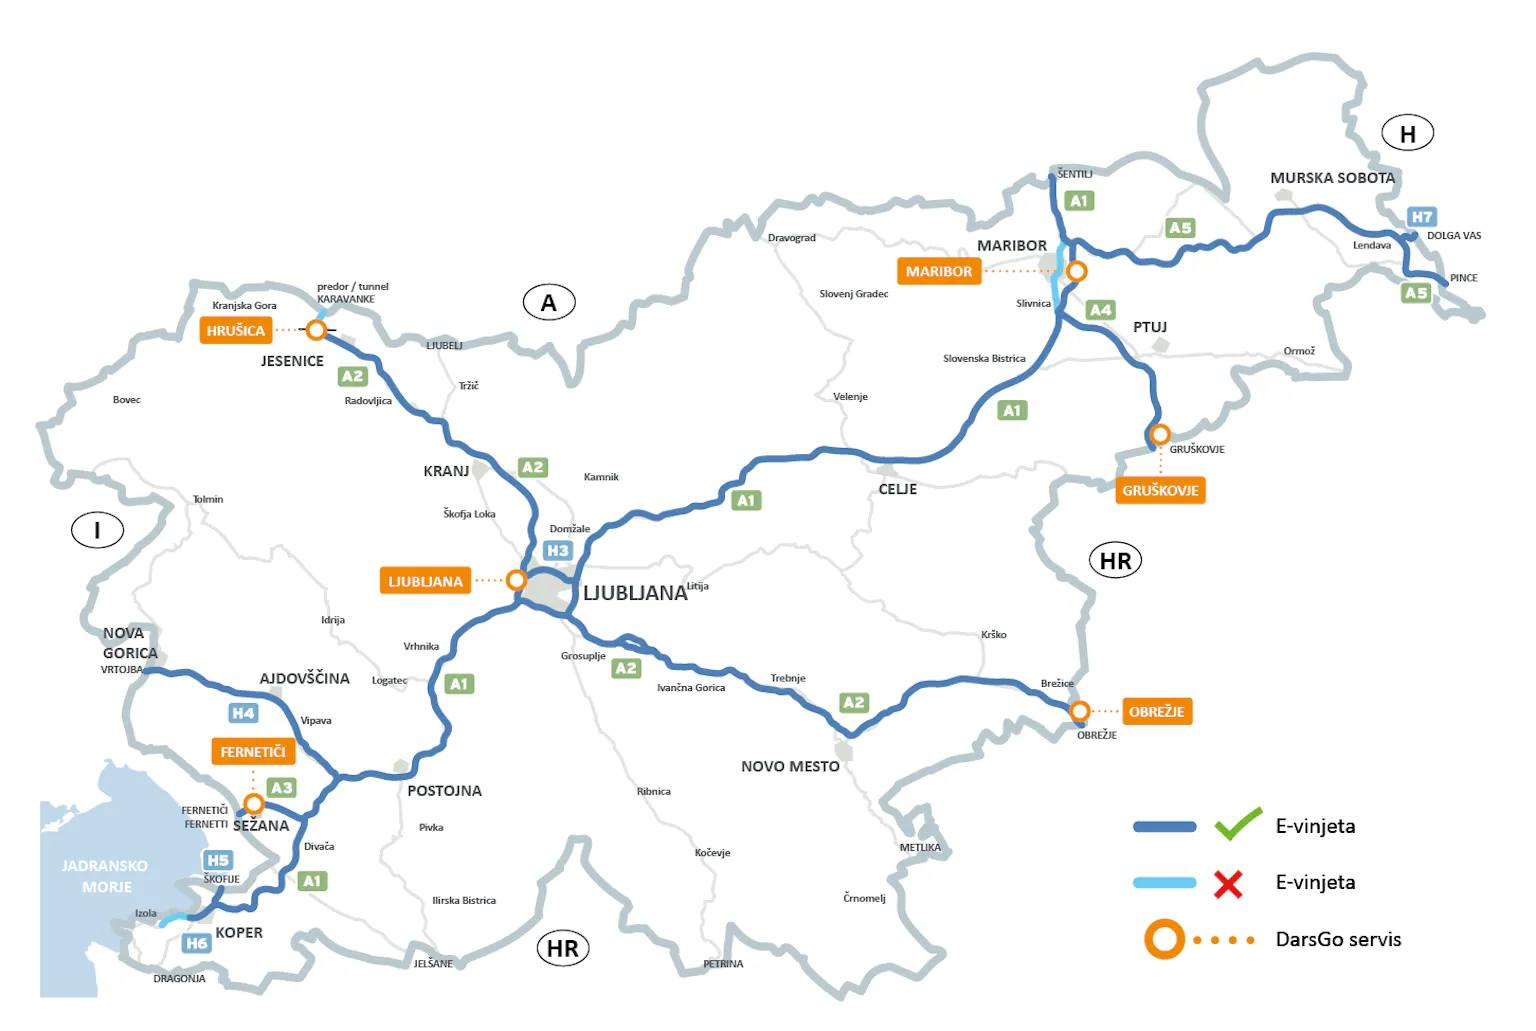 Mappa delle strade a pedaggio della Slovenia